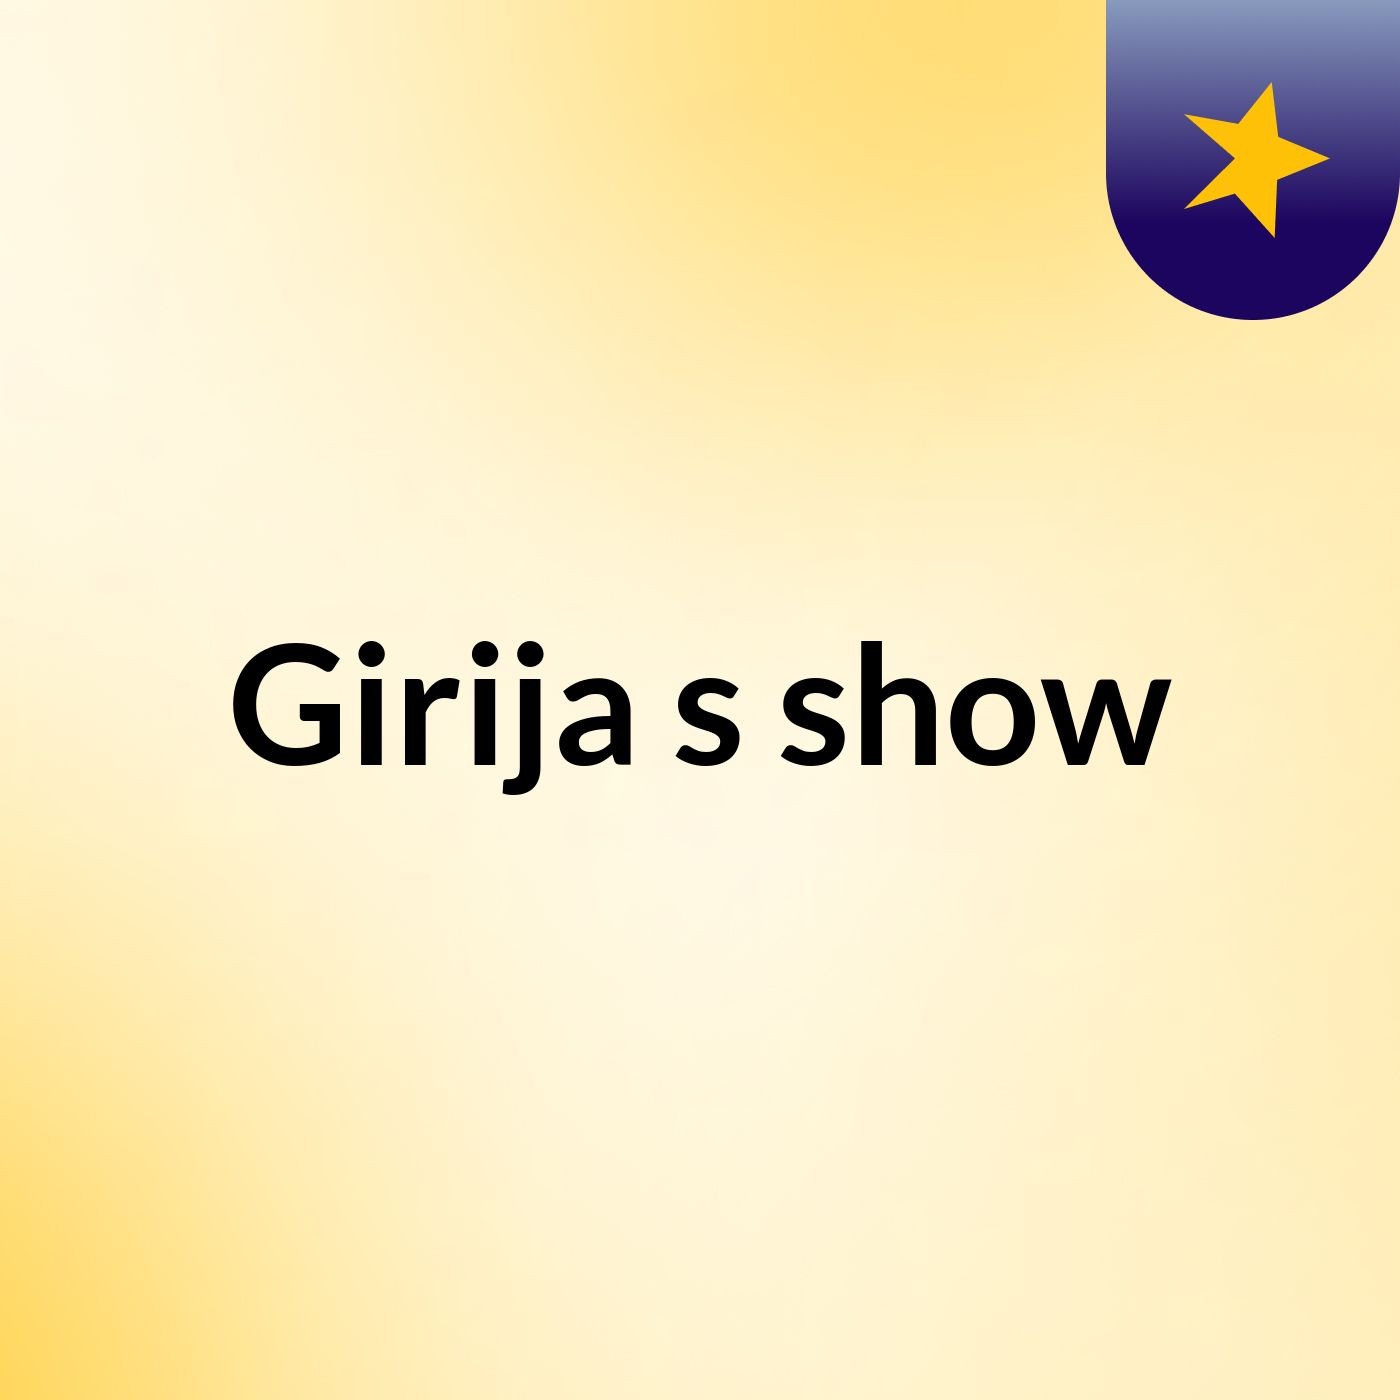 Girija's show